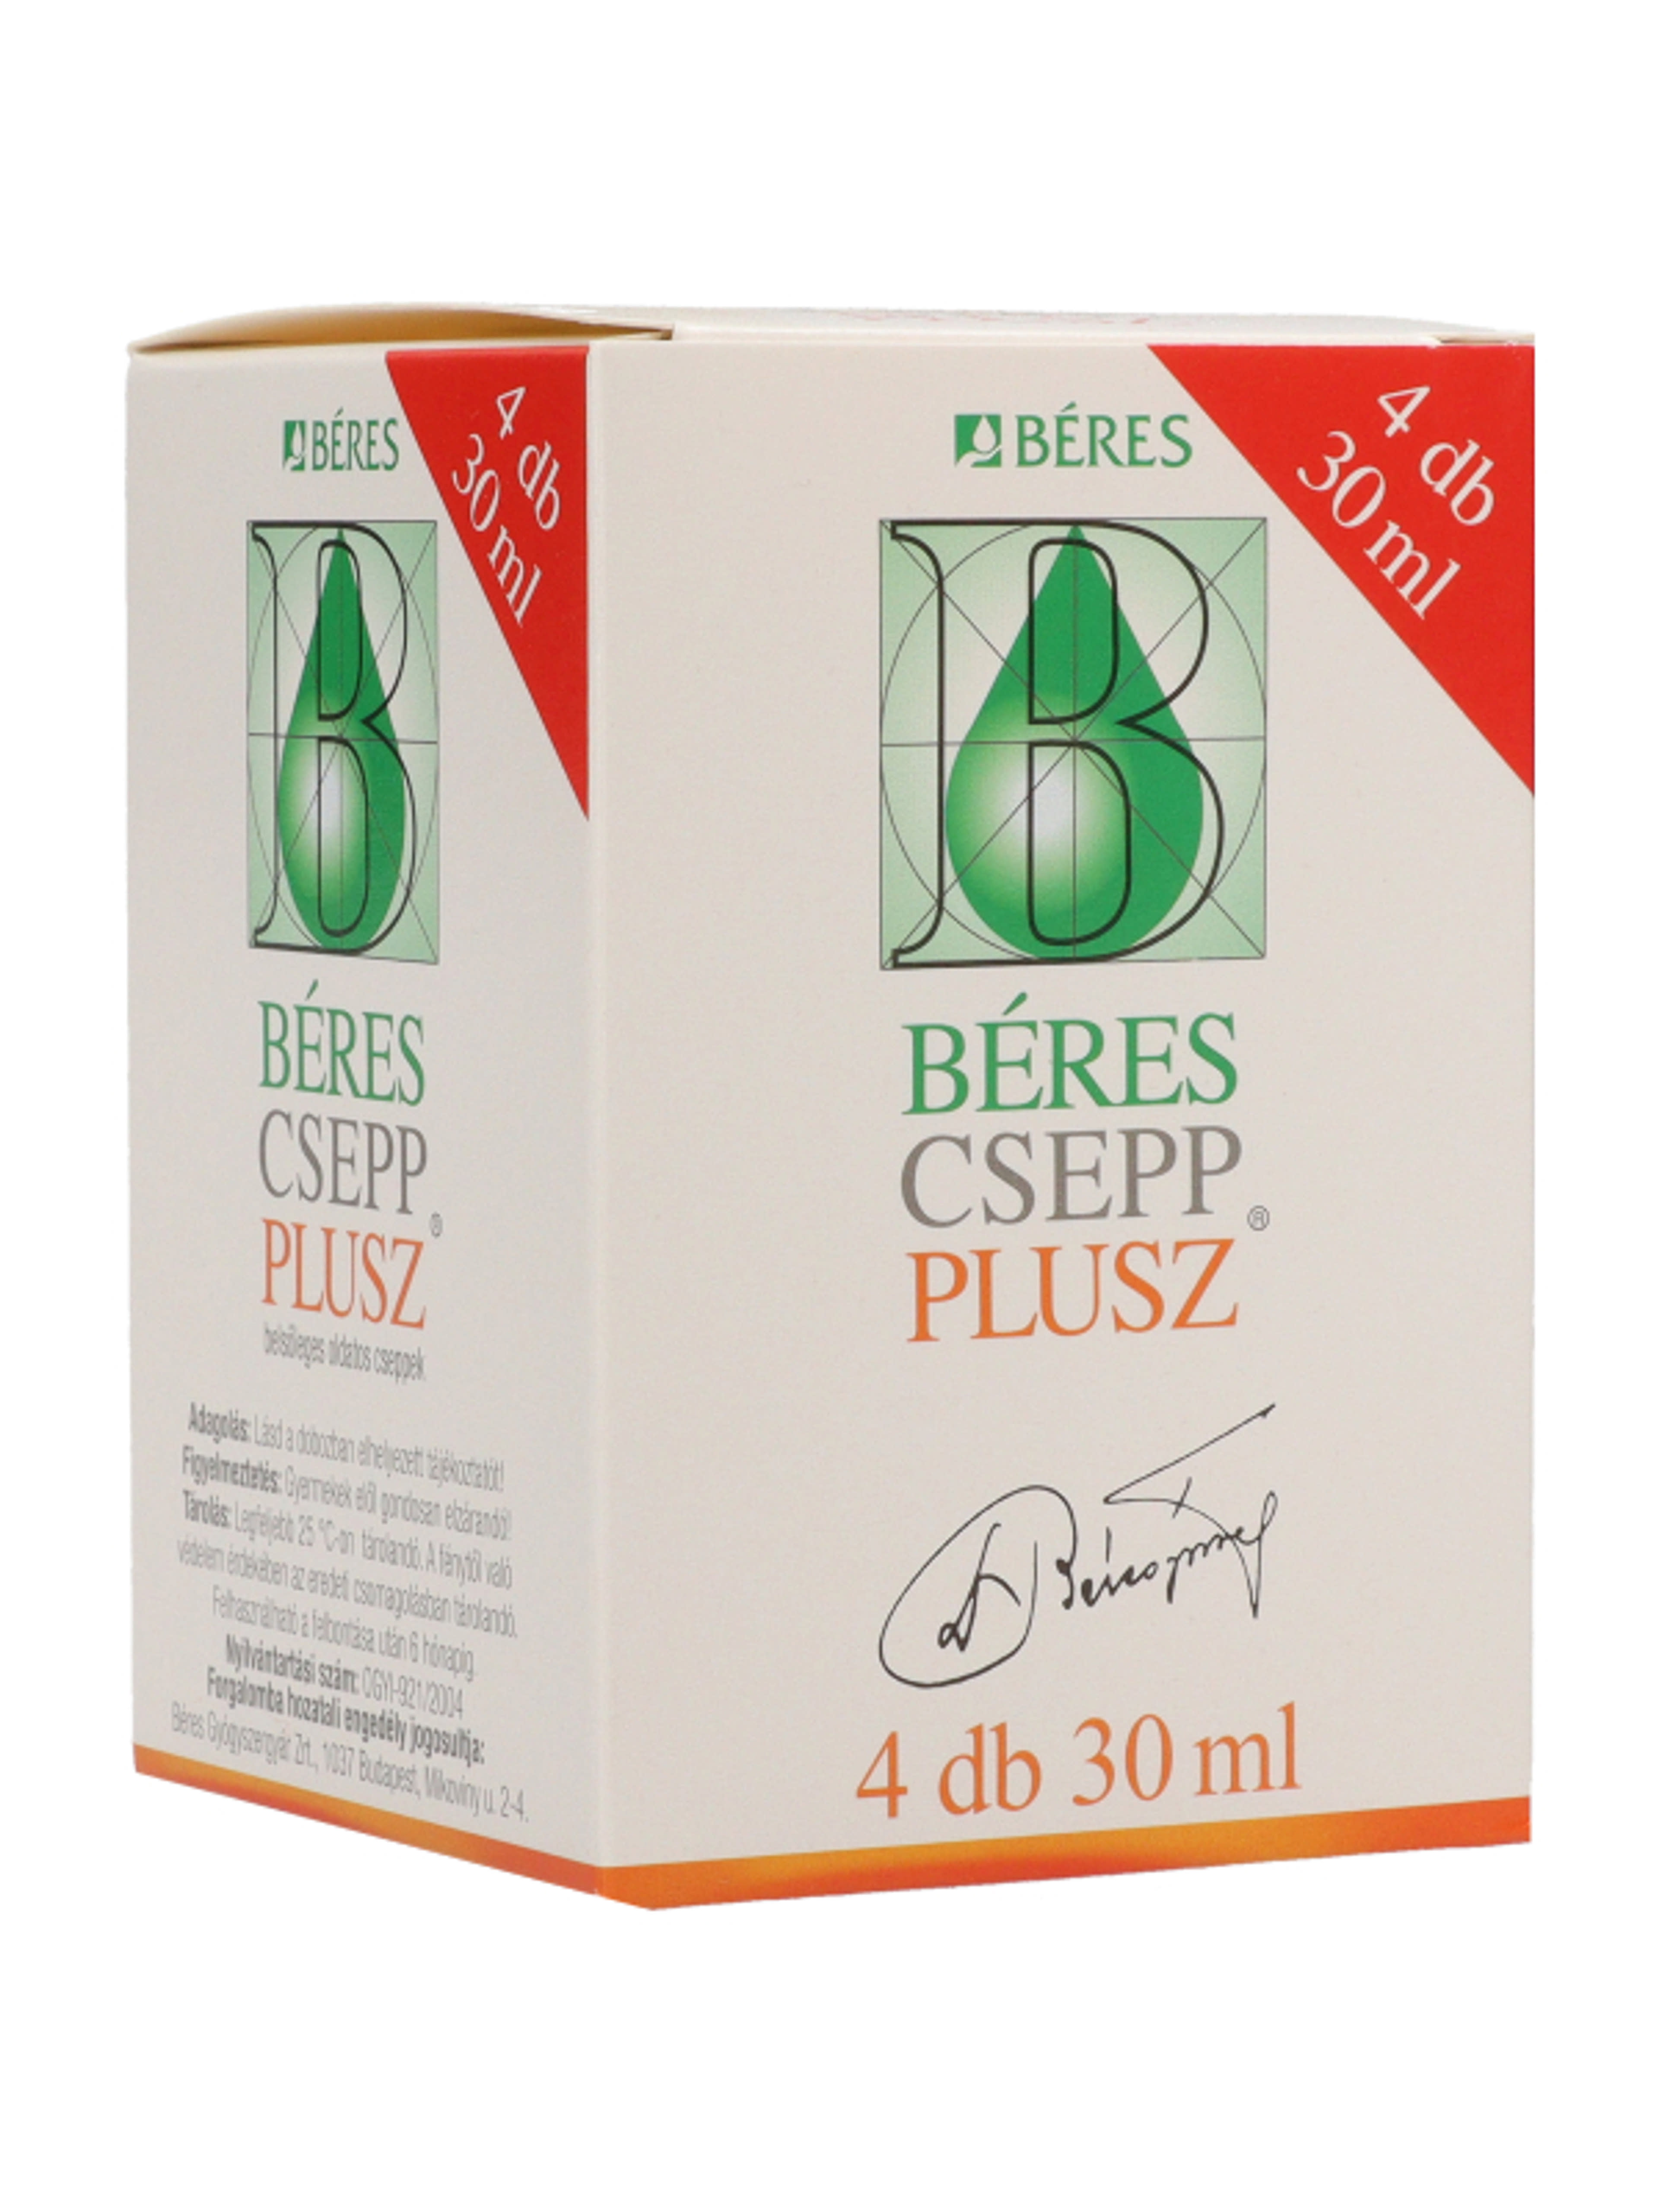 Béres Csepp Plusz (4*30 ml) - 120ml-7